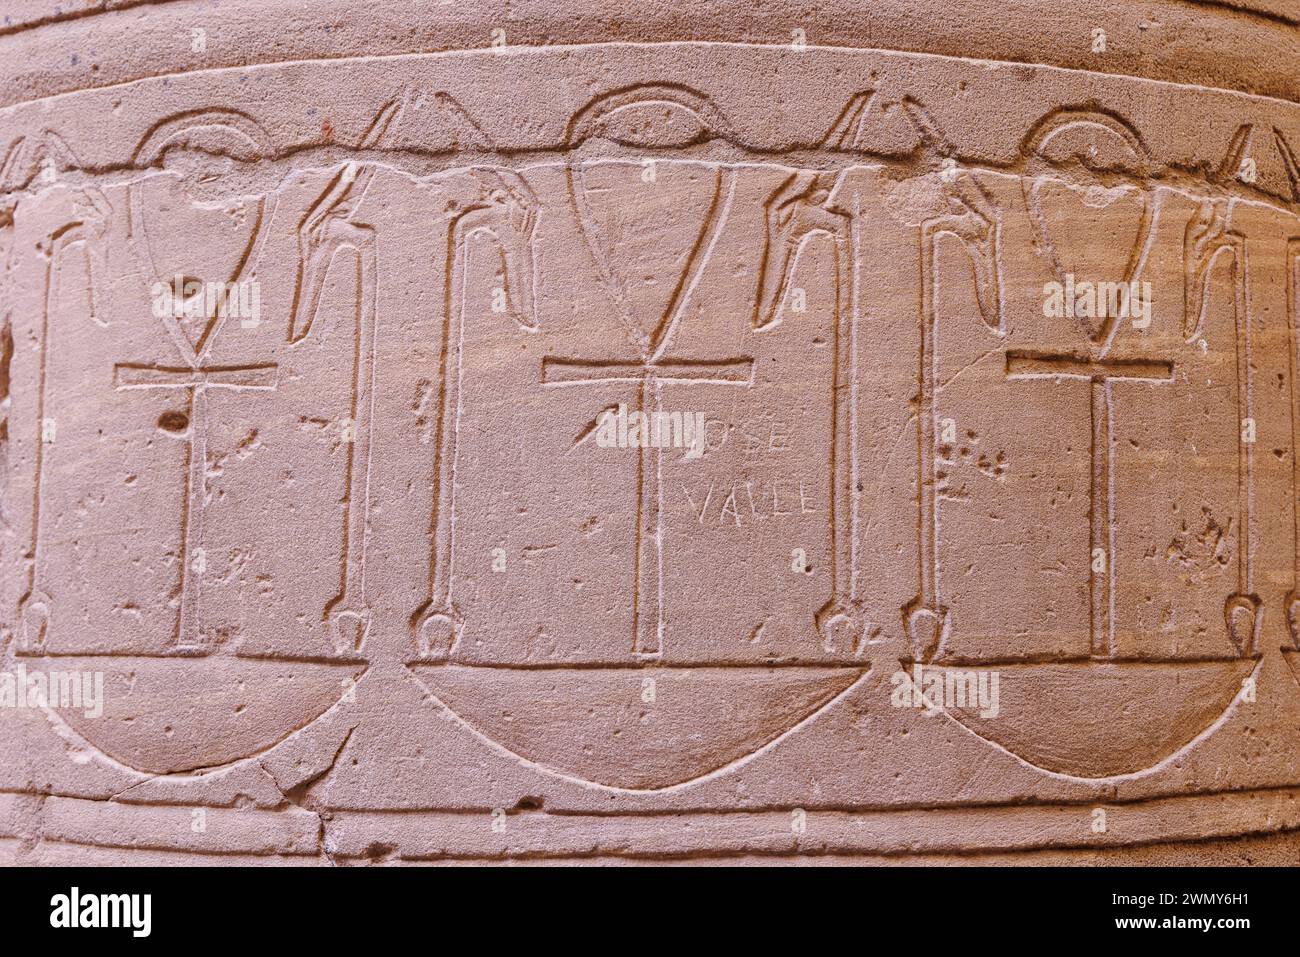 Ägypten, Assuan, nubische Denkmäler von Abu Simbel bis Philae, die von der UNESCO zum Weltkulturerbe erklärt wurden, Isis-Tempel in Philae, Hypostilhalle, Ankh auf einer Säule Stockfoto